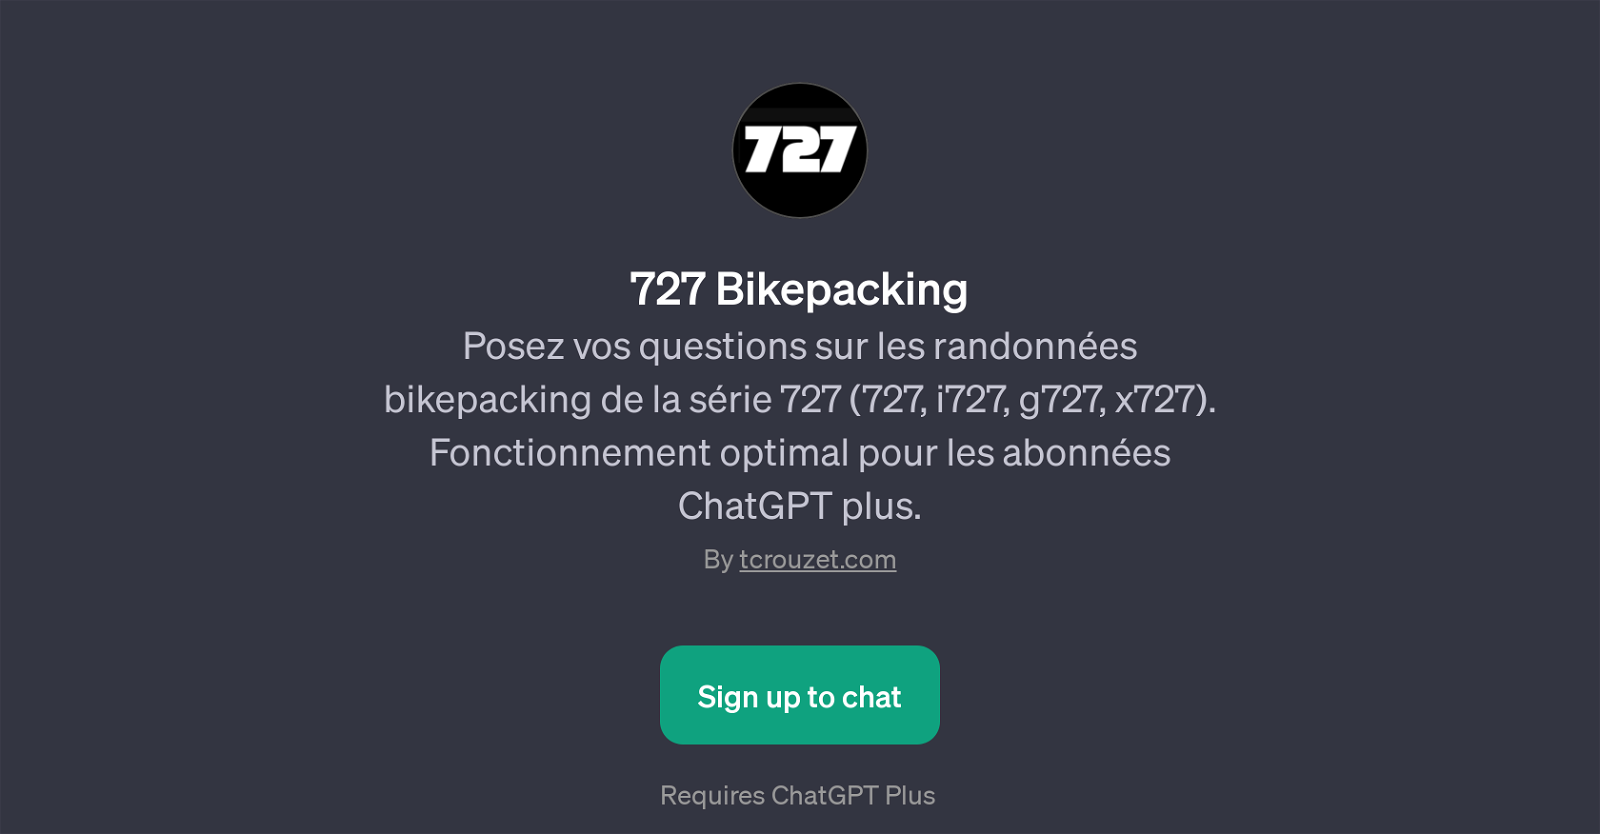 727 Bikepacking website